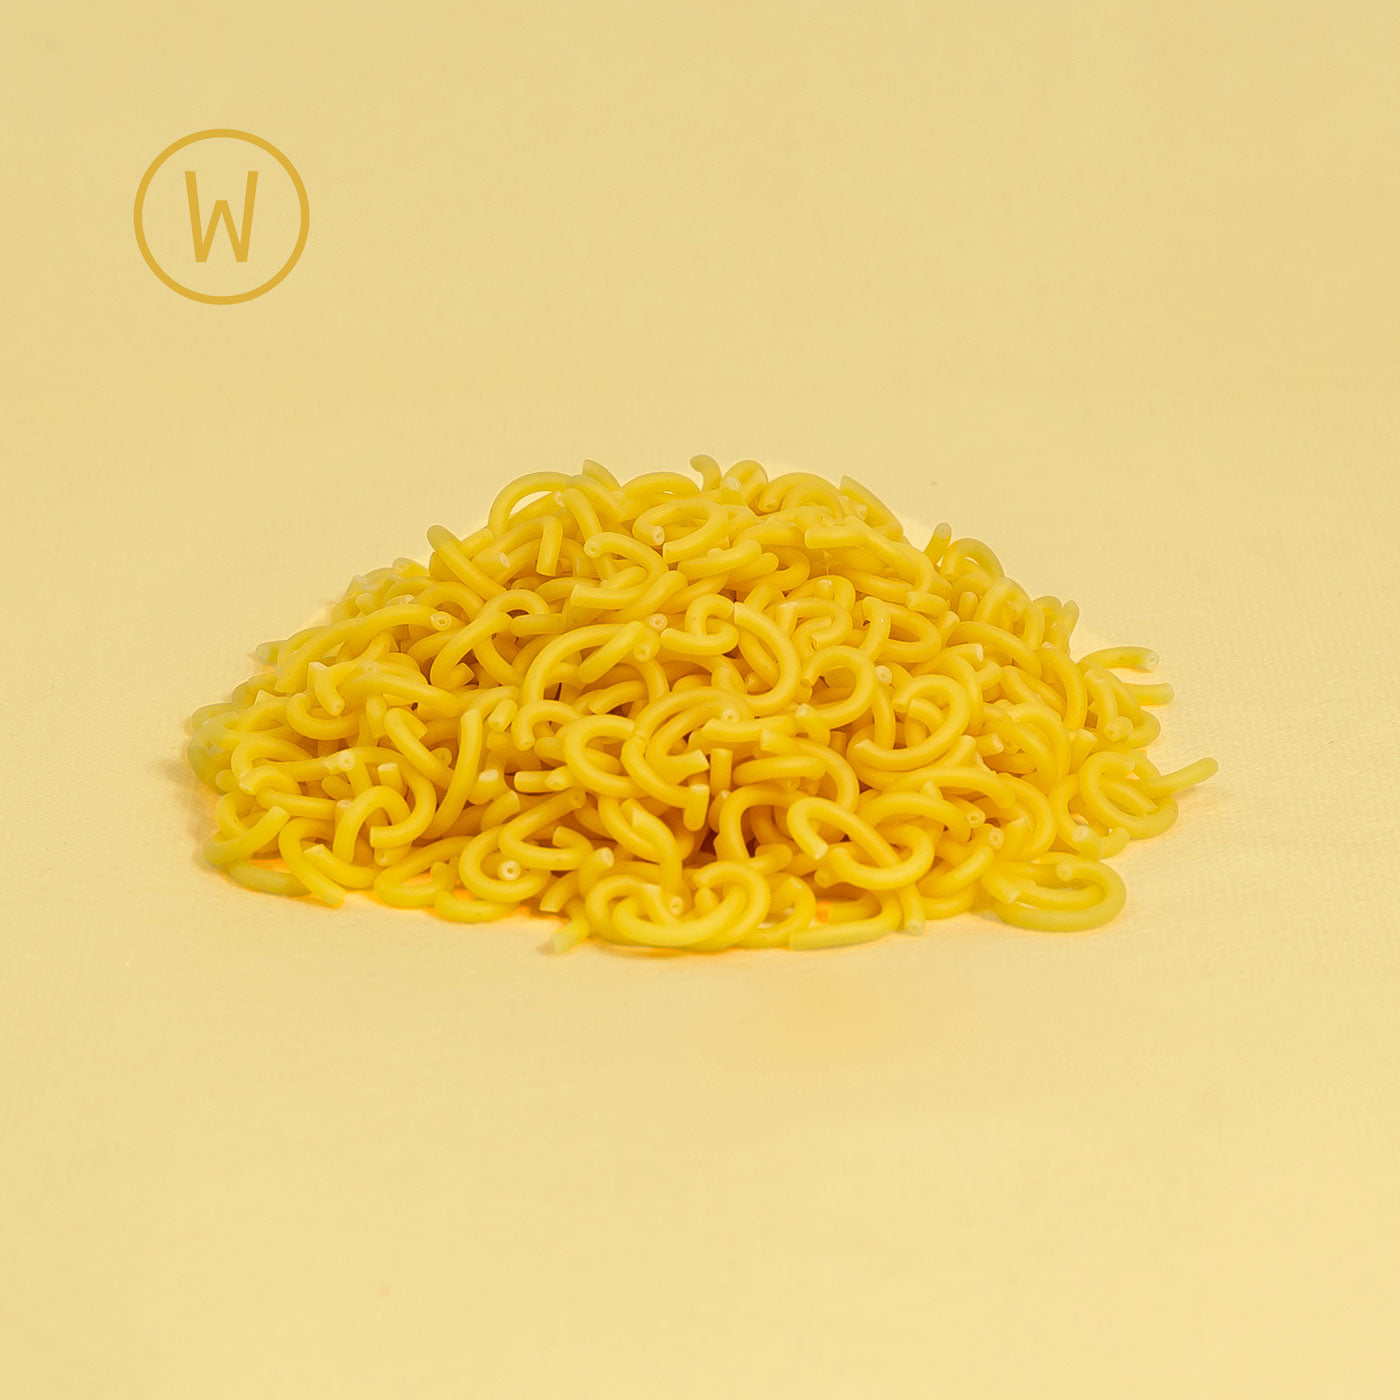 Gabelspaghetti